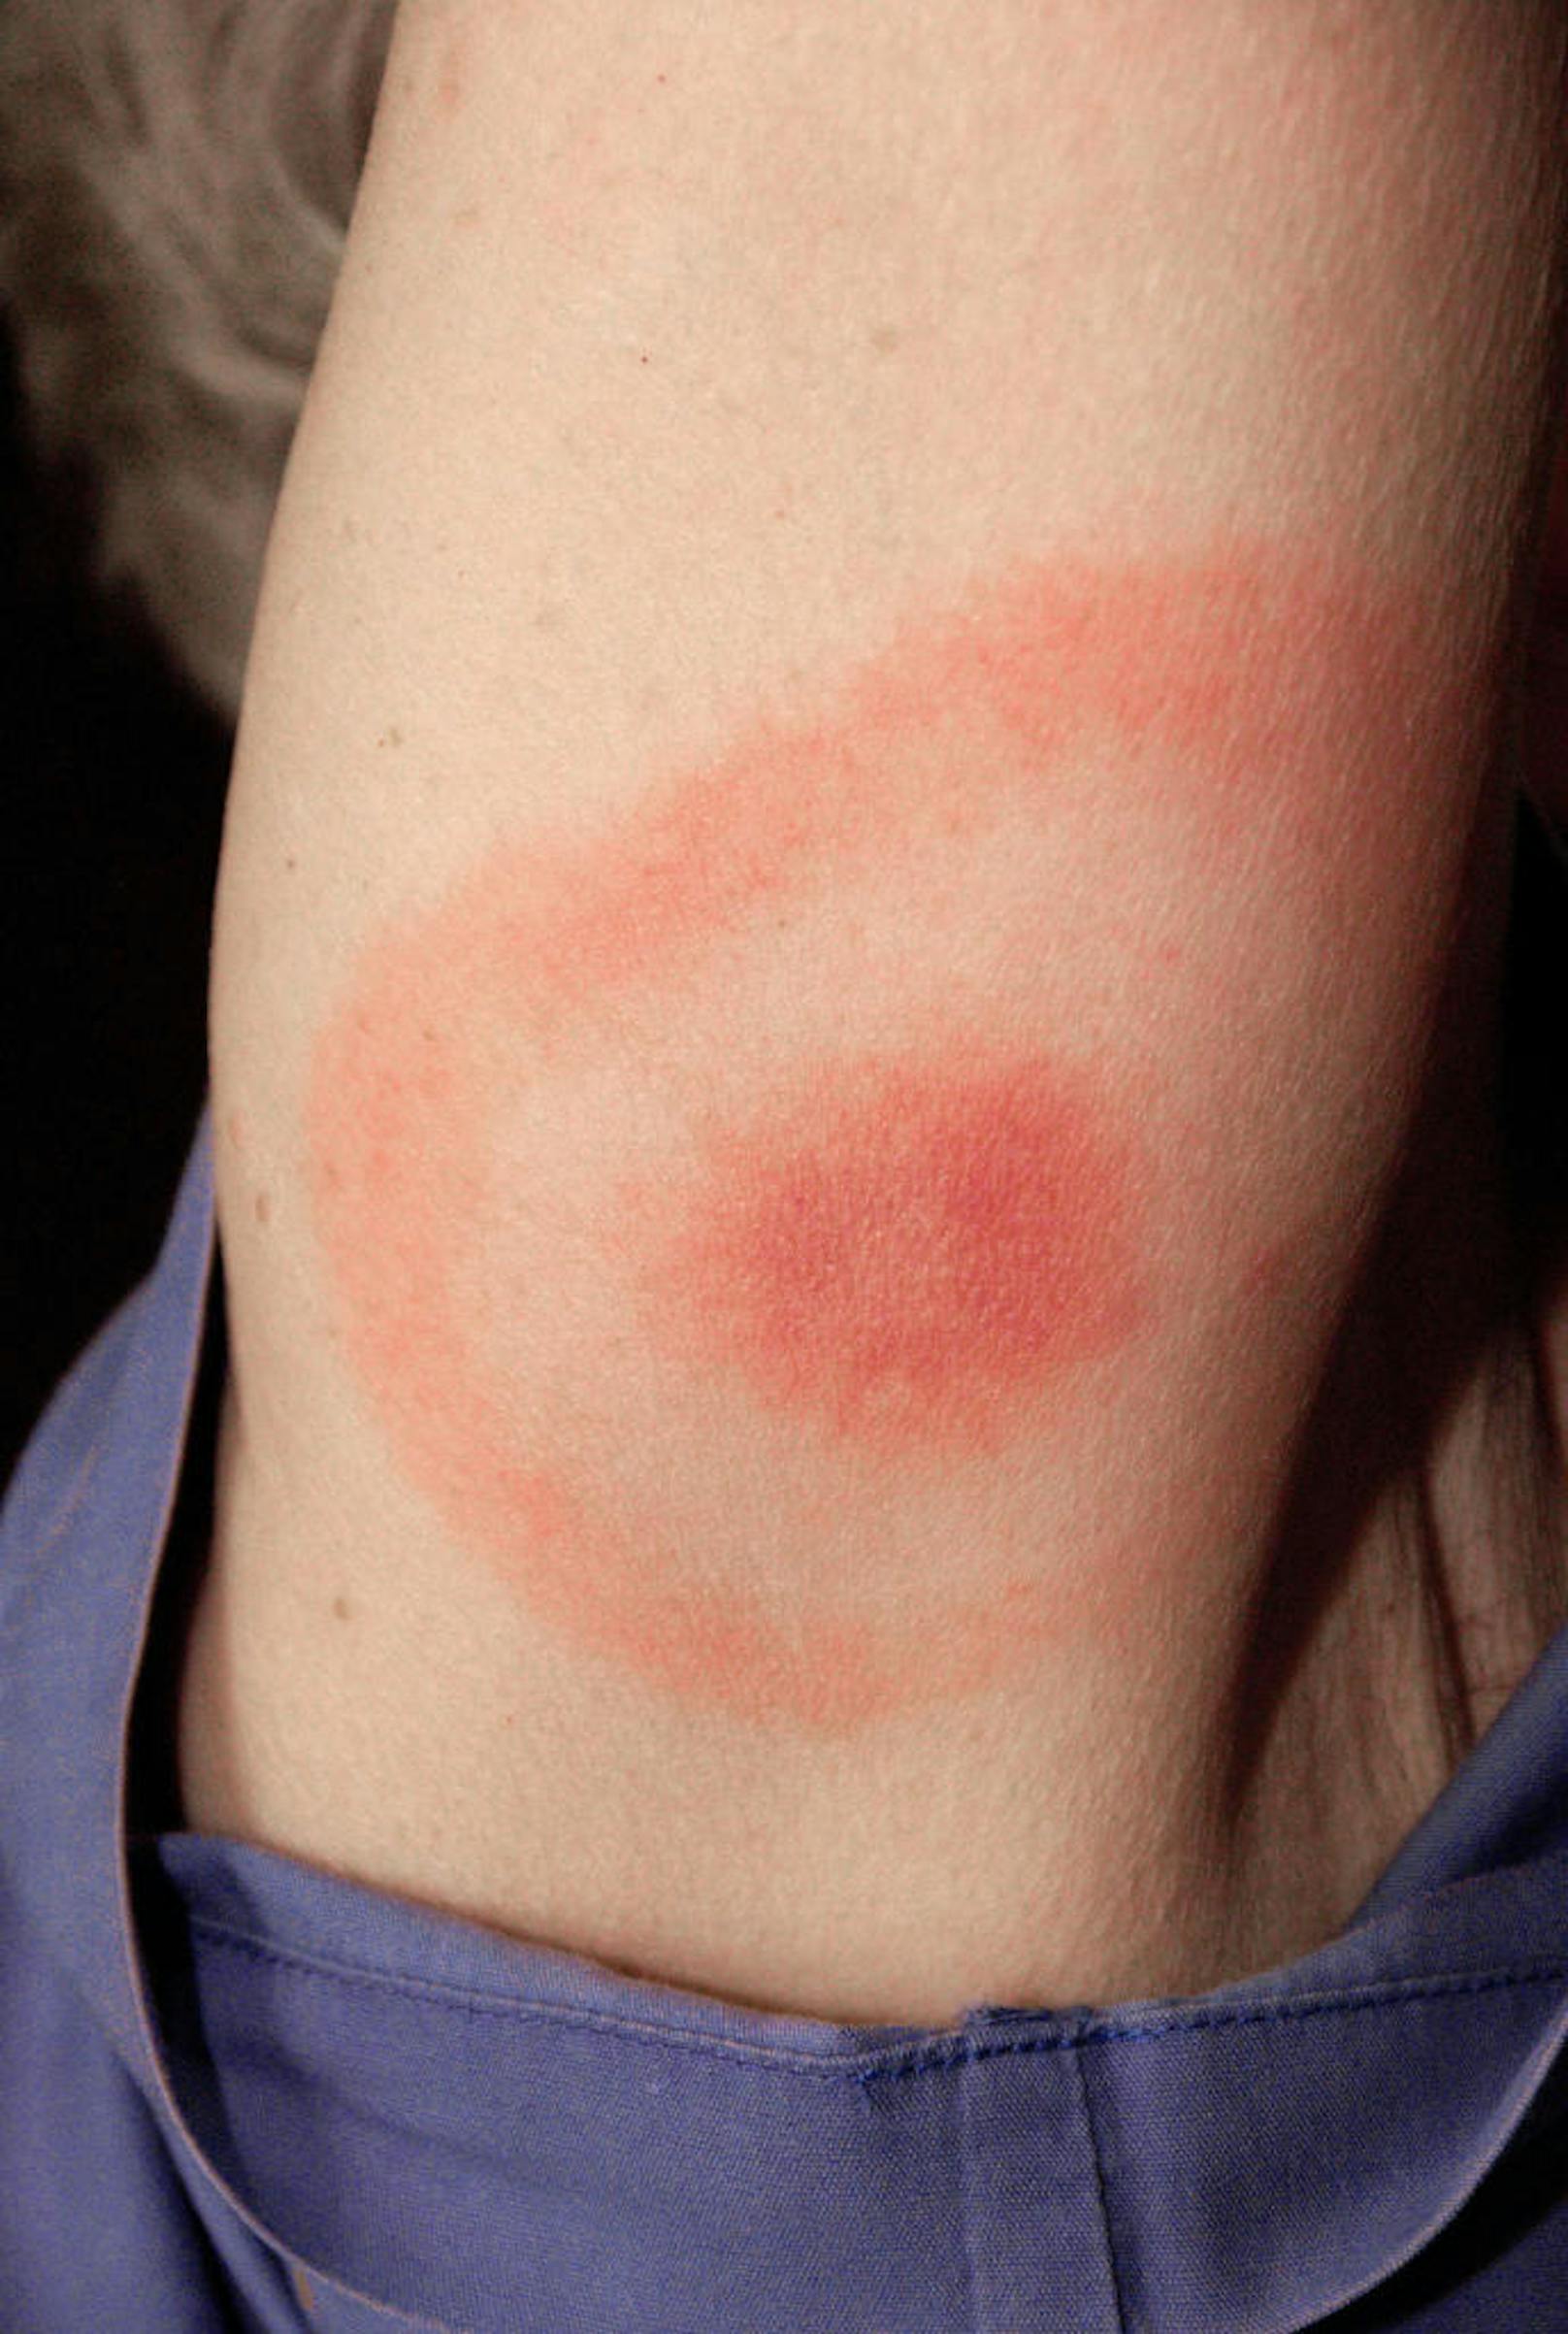 Rötungen in Form einer Zielscheibe nach einem Zeckenbiss können ein Anzeichen für eine Ansteckung mit Lyme-Borreliose sein. Eine Borrelieninfektion durch Zecken ist - im Gegensatz zu der durch Viren hervorgerufenen FSME - sogar in Städten möglich.